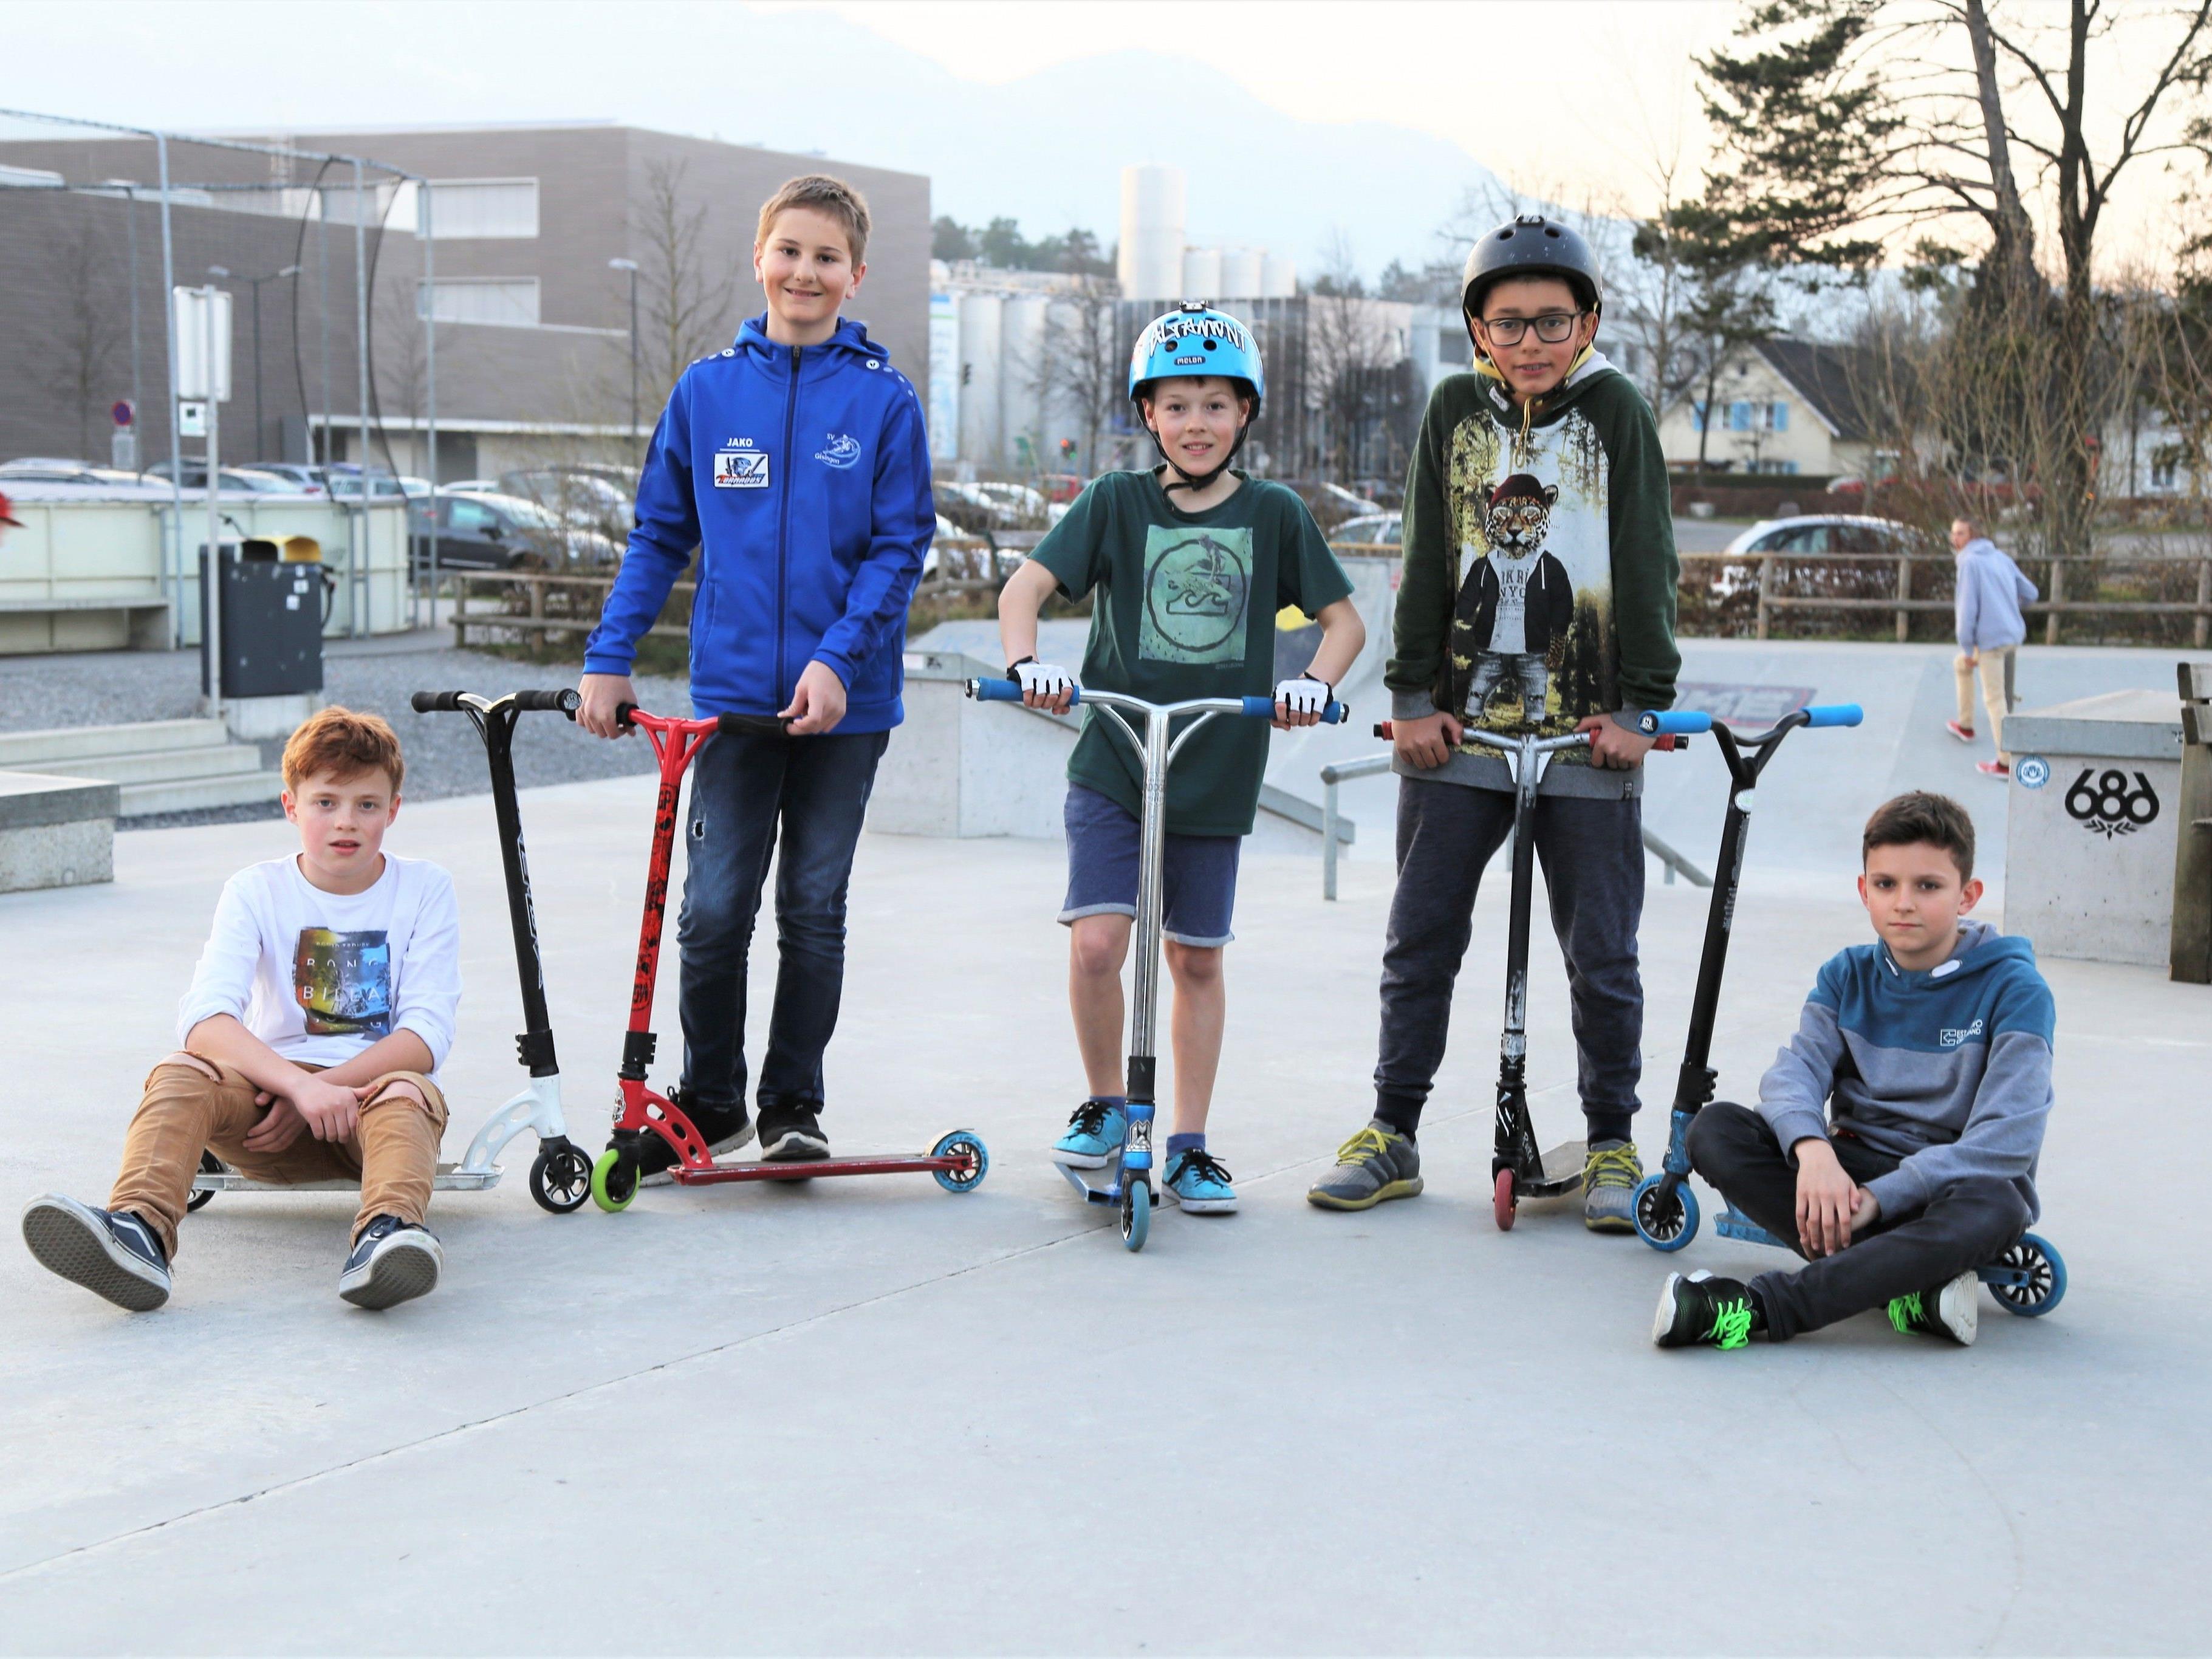 Nicht nur mit dem Skateboard: Diese Jugendlichen zeigen ihr Können und „Skills“ auf dem Skateplatz Oberau mit dem Scooter.